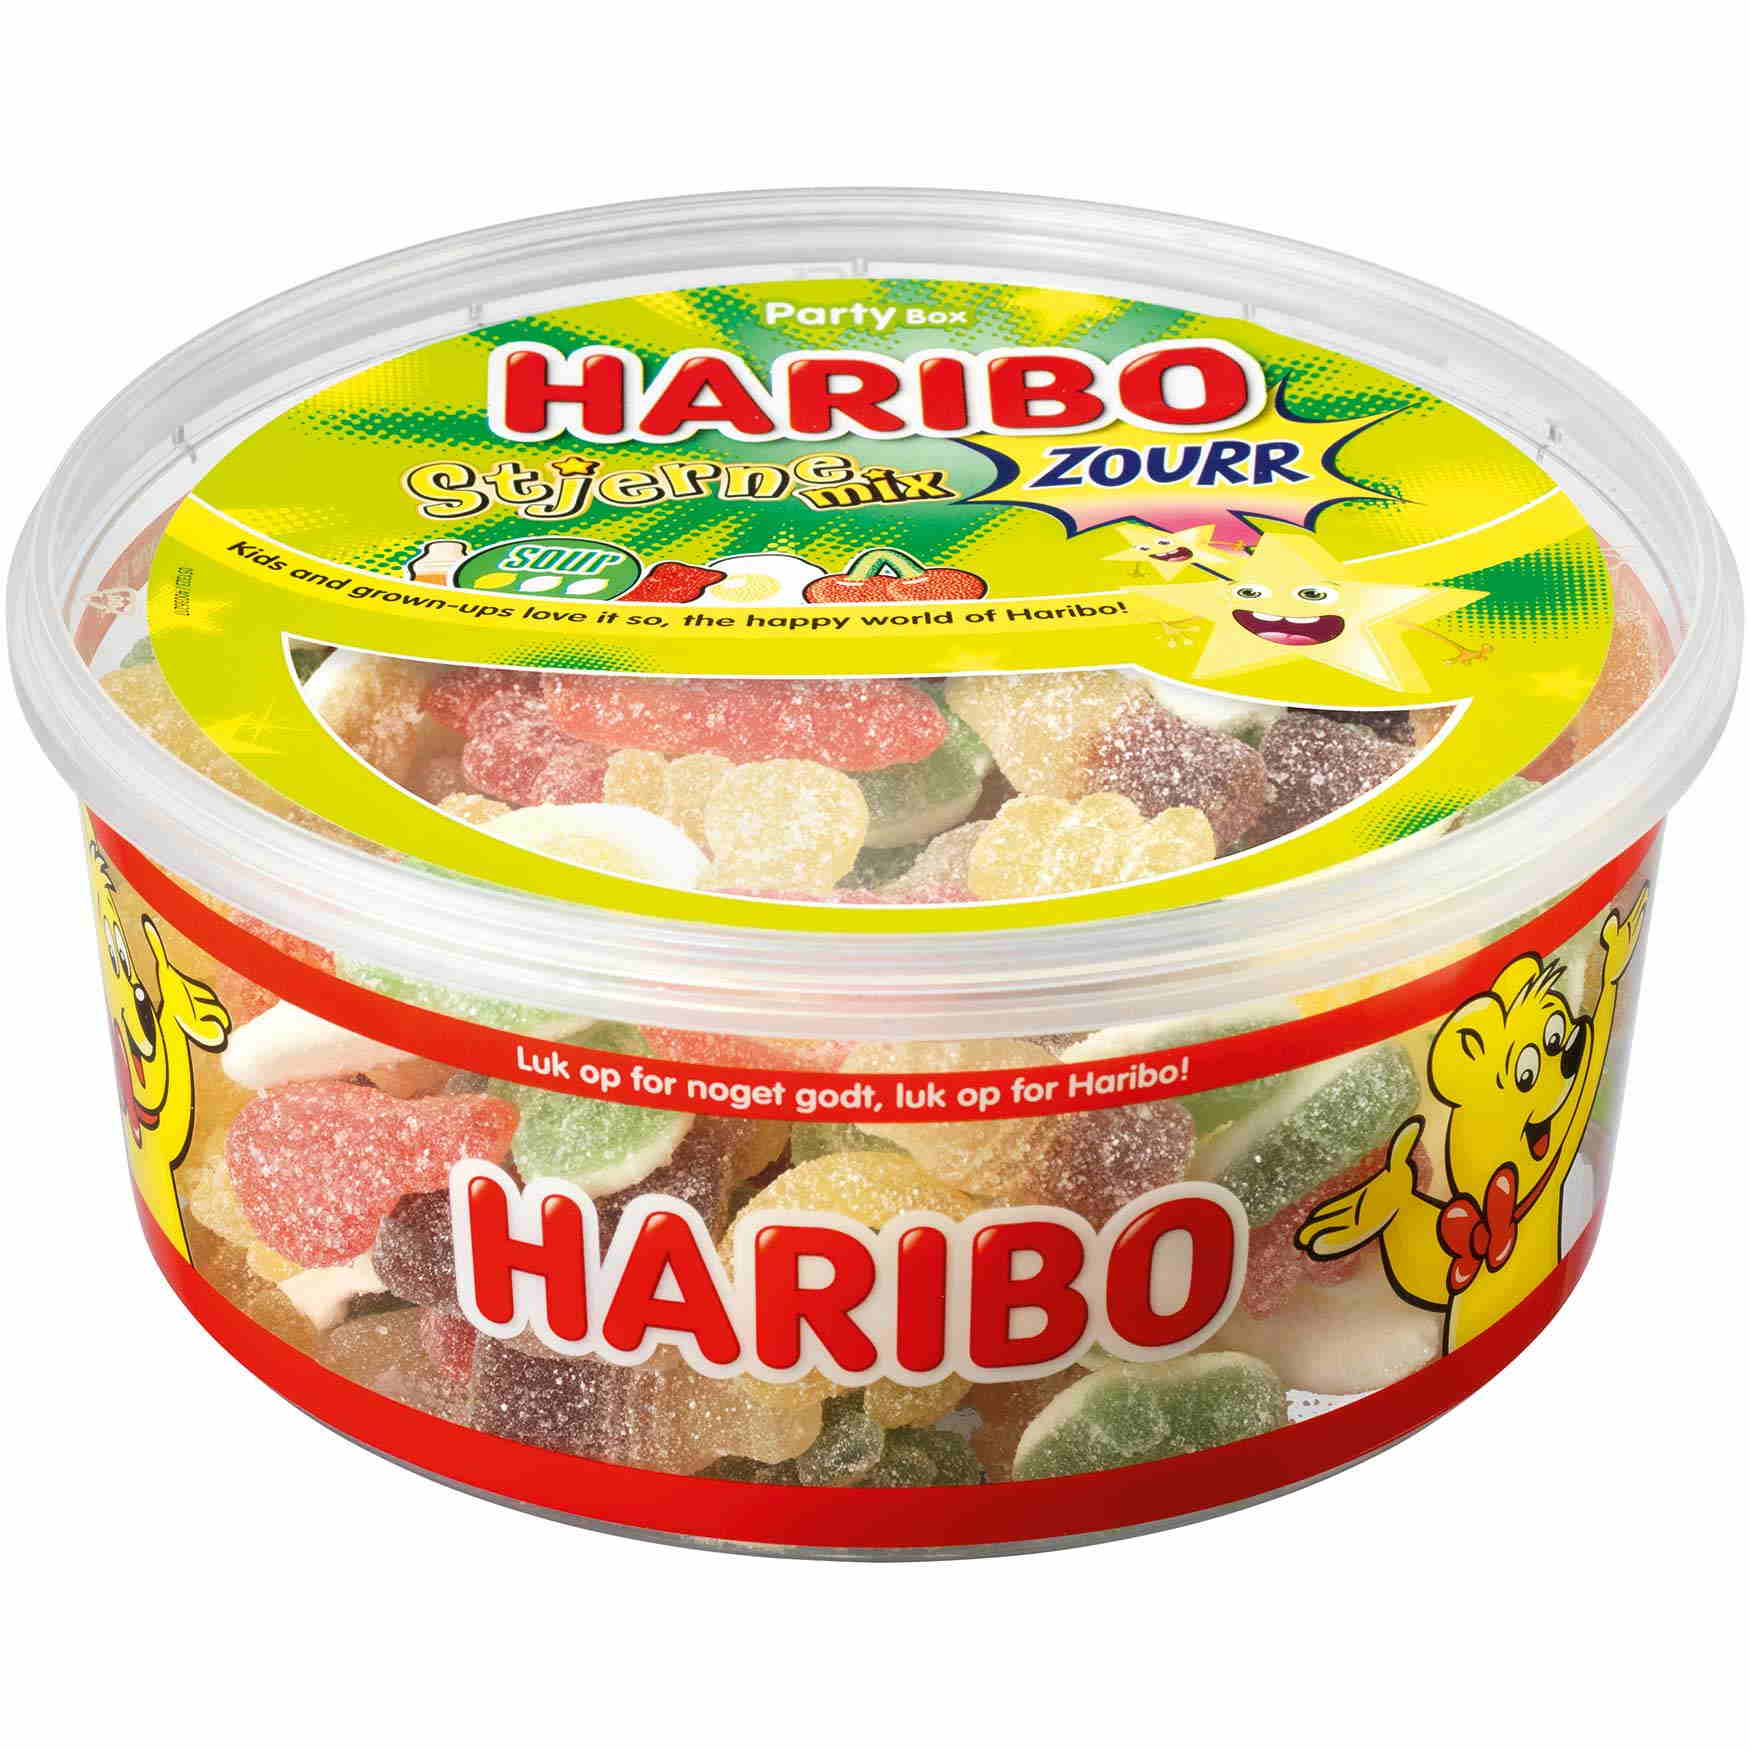 fløjte specielt Sidst Haribo Stjerne Mix Sour 900 g - Grænsehandel til billige priser